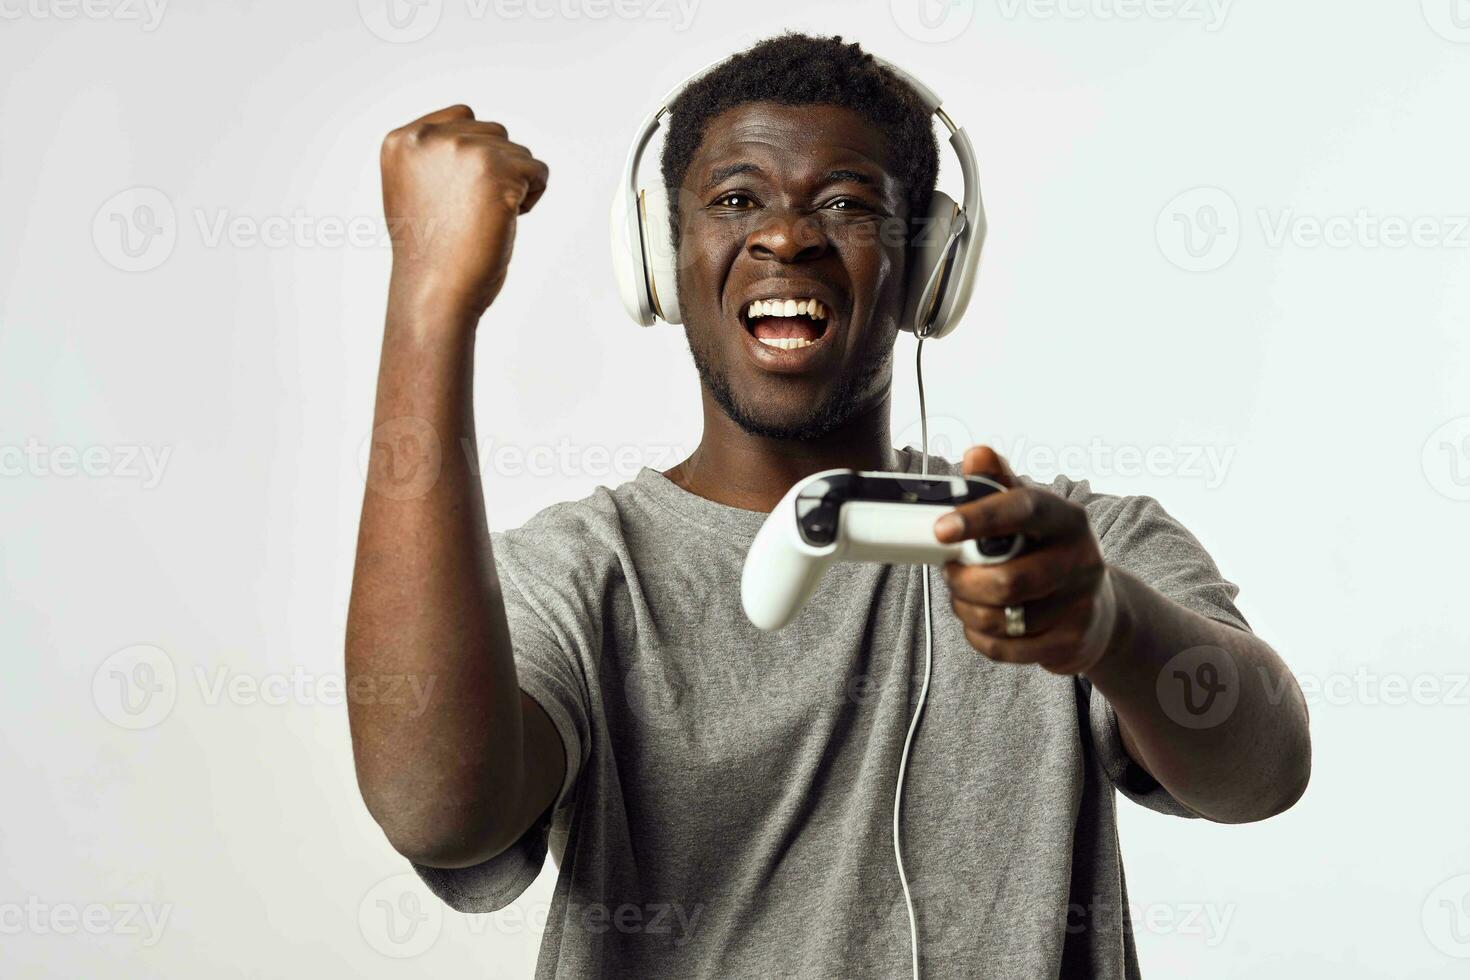 en man av afrikansk utseende i hörlurar med en gamepad i hans händer spelar video spel teknologi foto